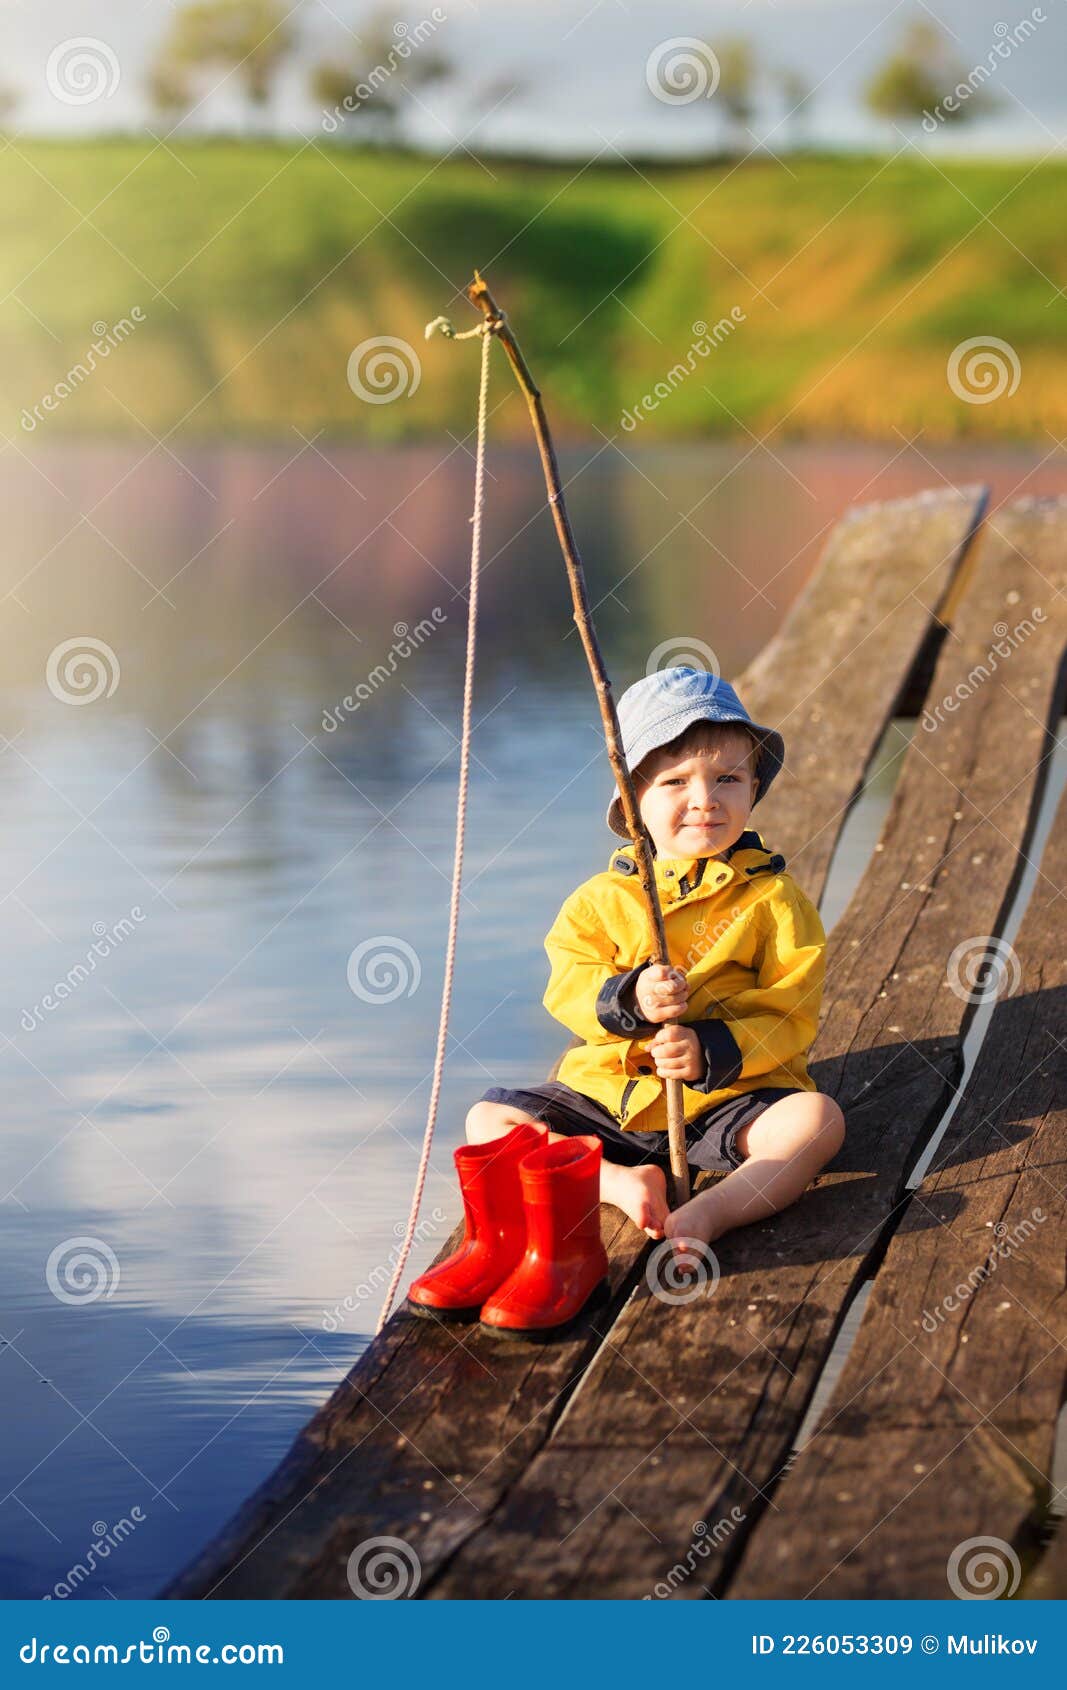 https://thumbs.dreamstime.com/z/boy-wooden-dock-fishing-net-226053309.jpg